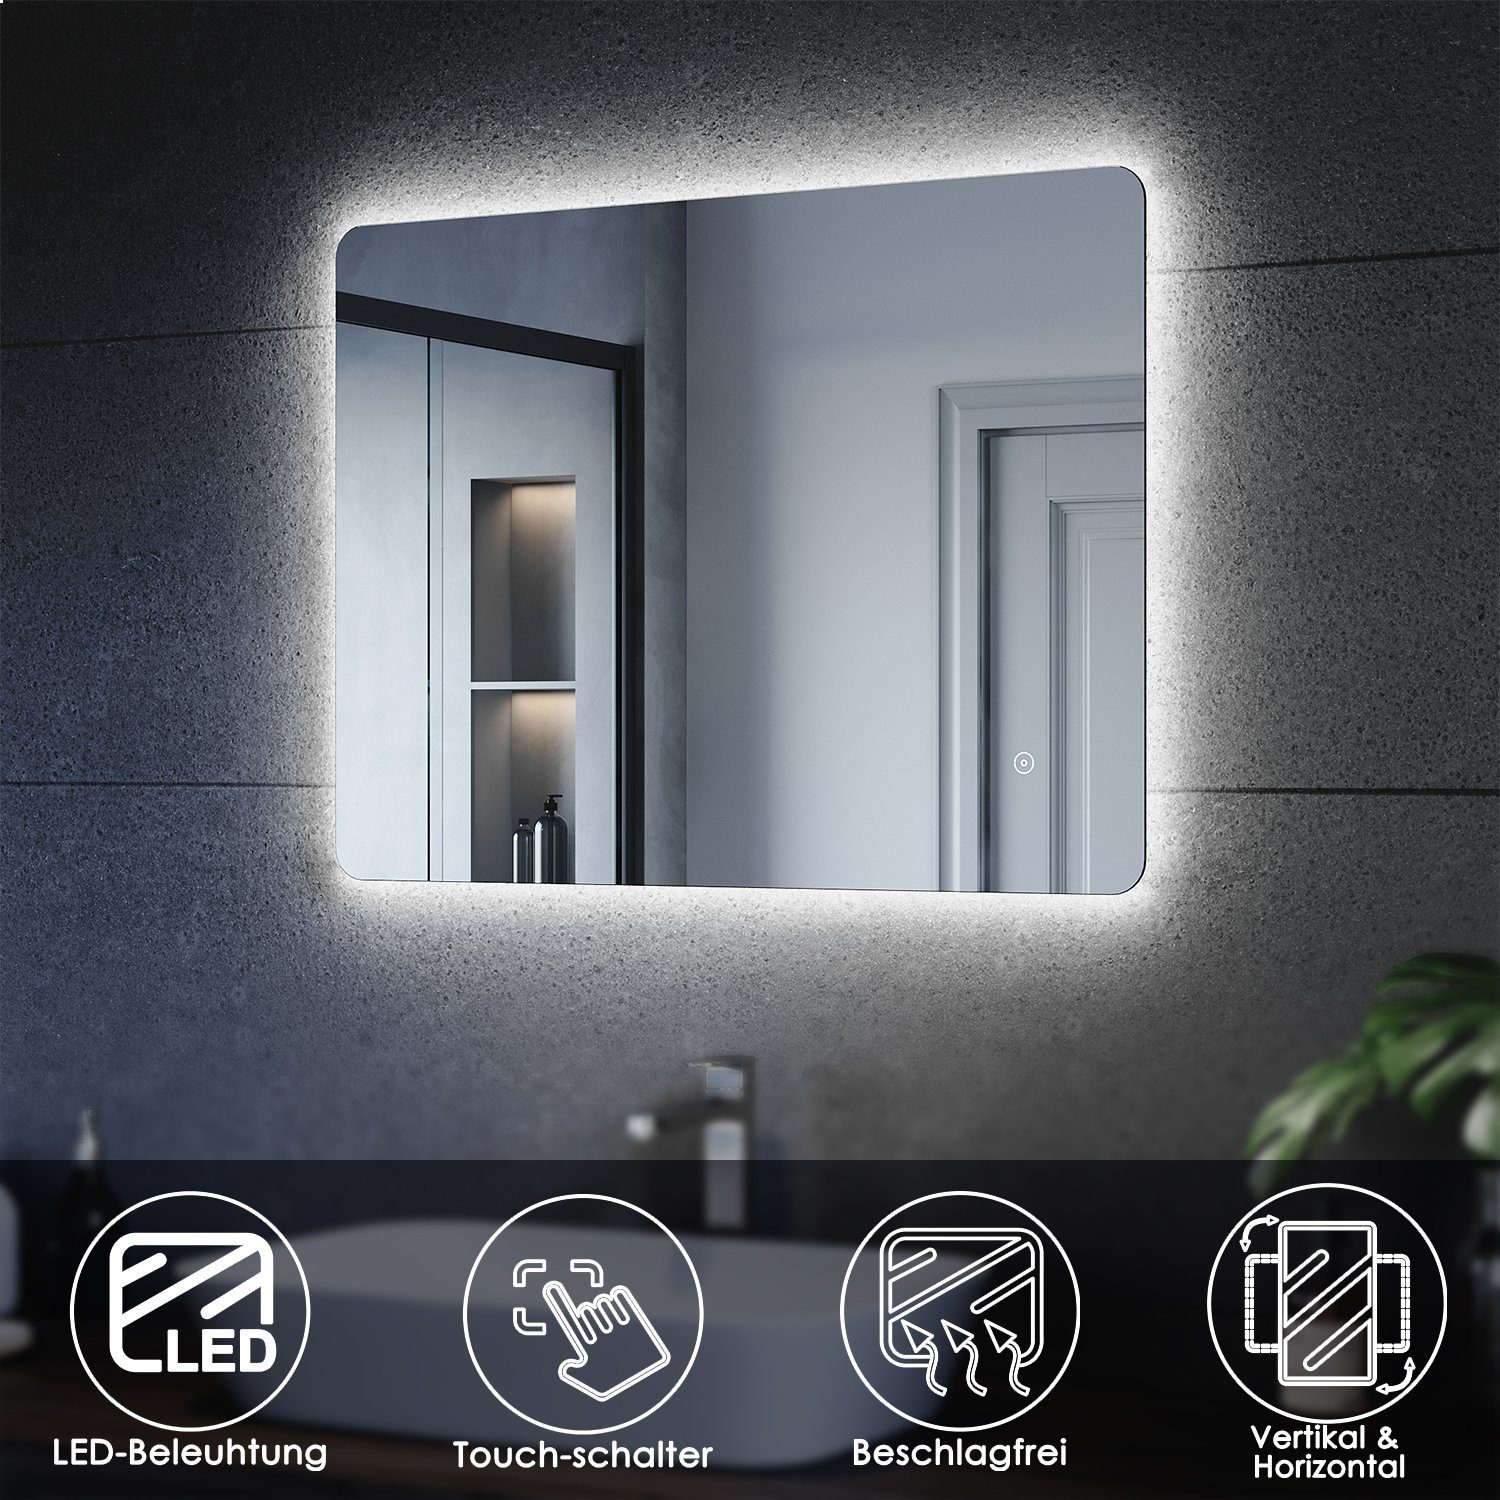 SONNI Зеркало для ванной комнаты LED Зеркало, 80 x 60 cm, Lichtspiegel, Косметички, Antibeschlage, Wandmontage, Badezimmer,Touch Schalter, Wandschalter